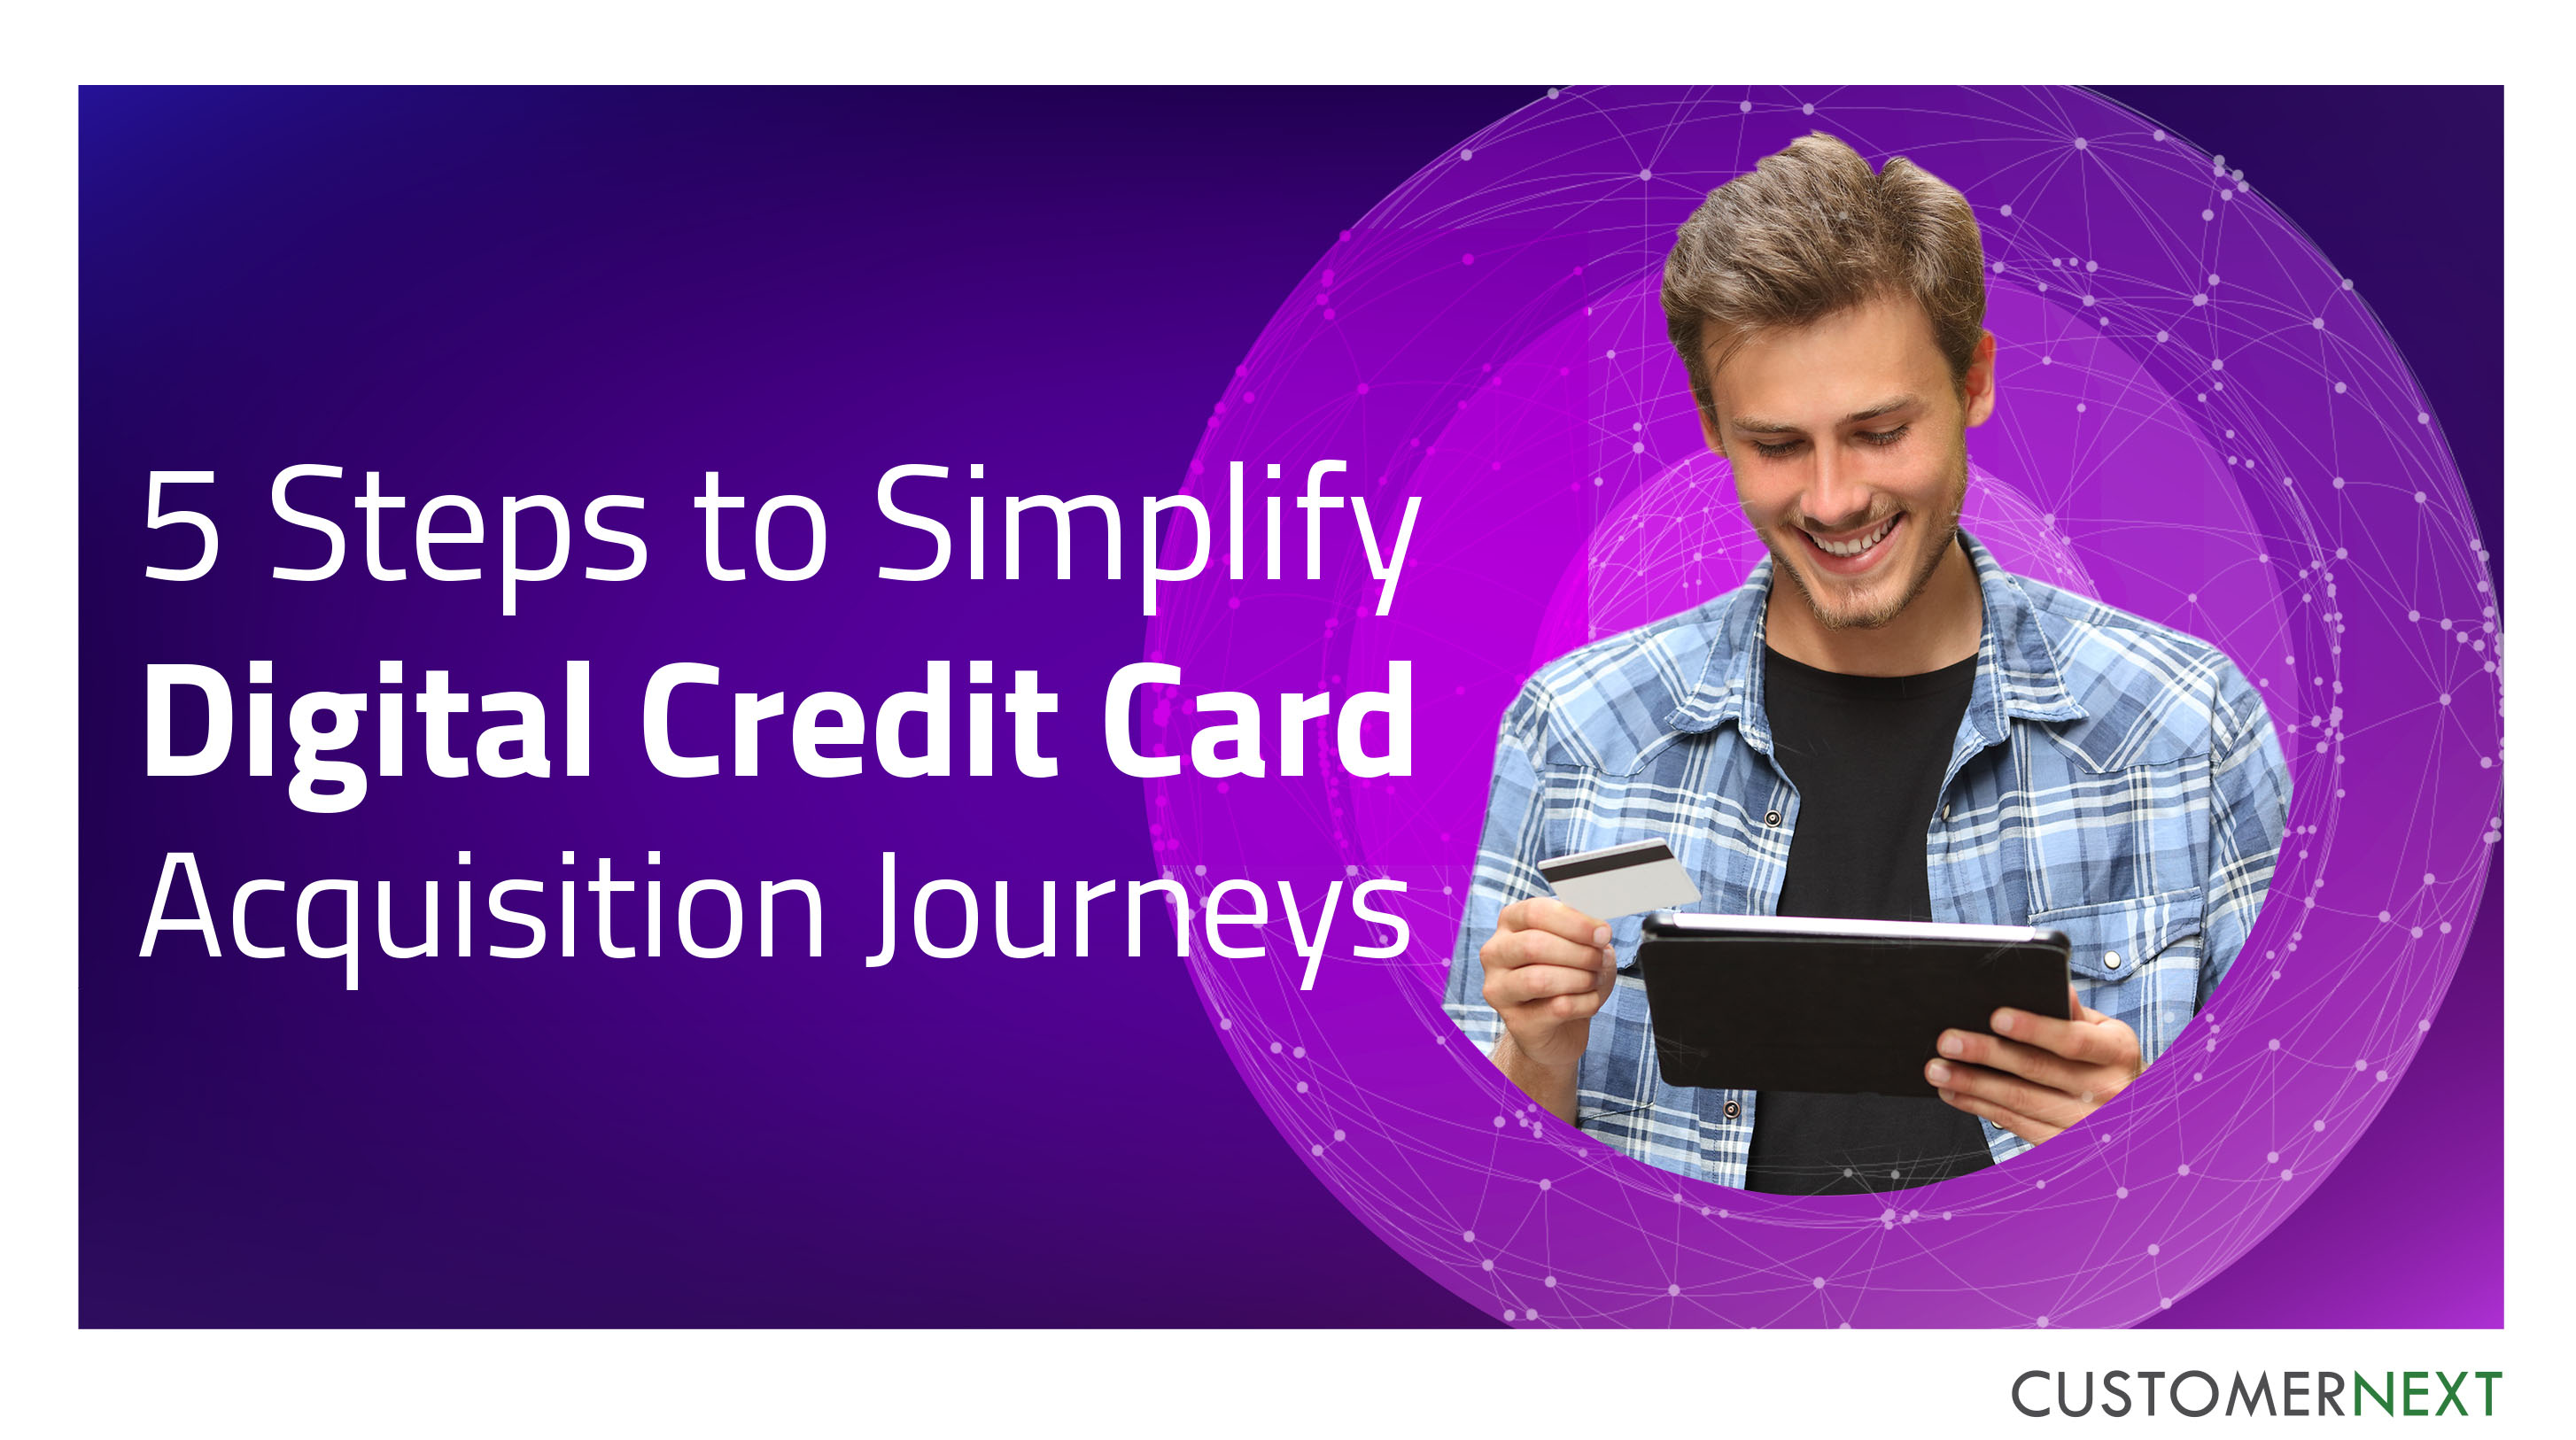 Digital customer journeys, Digital banking journeys, Digital credit card journeys
